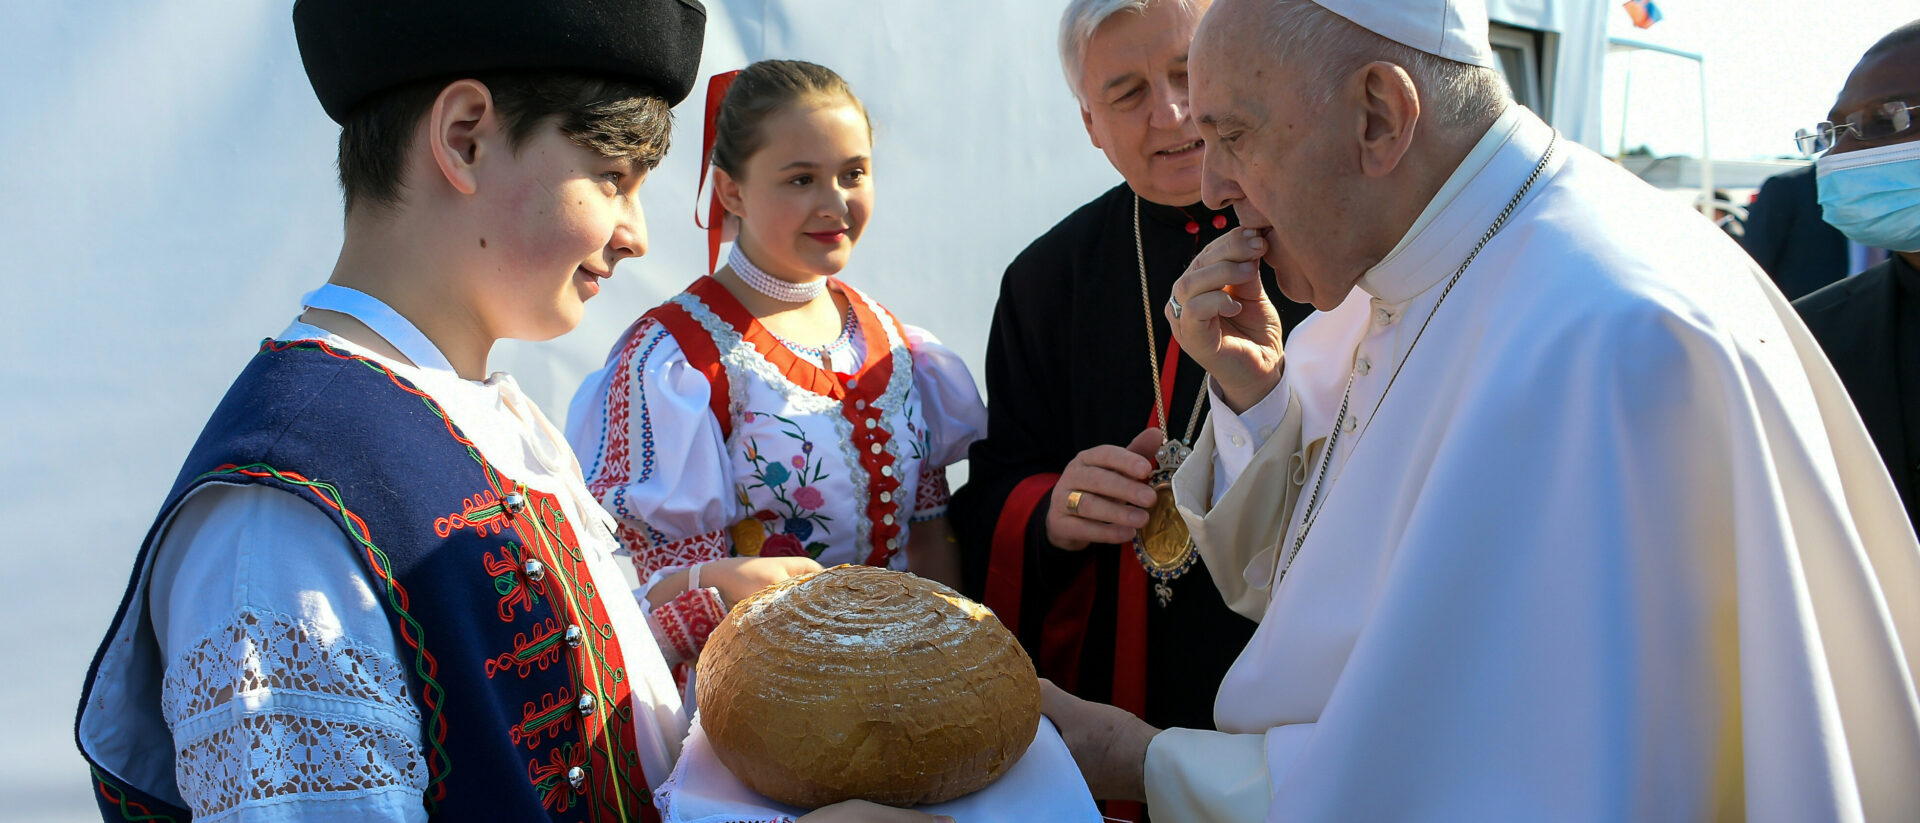 Ein Jugendlicher in traditioneller Kleidung reicht Papst Franziskus ein Laib Brot vor dem Sportstadion in Presov (Slowakei).